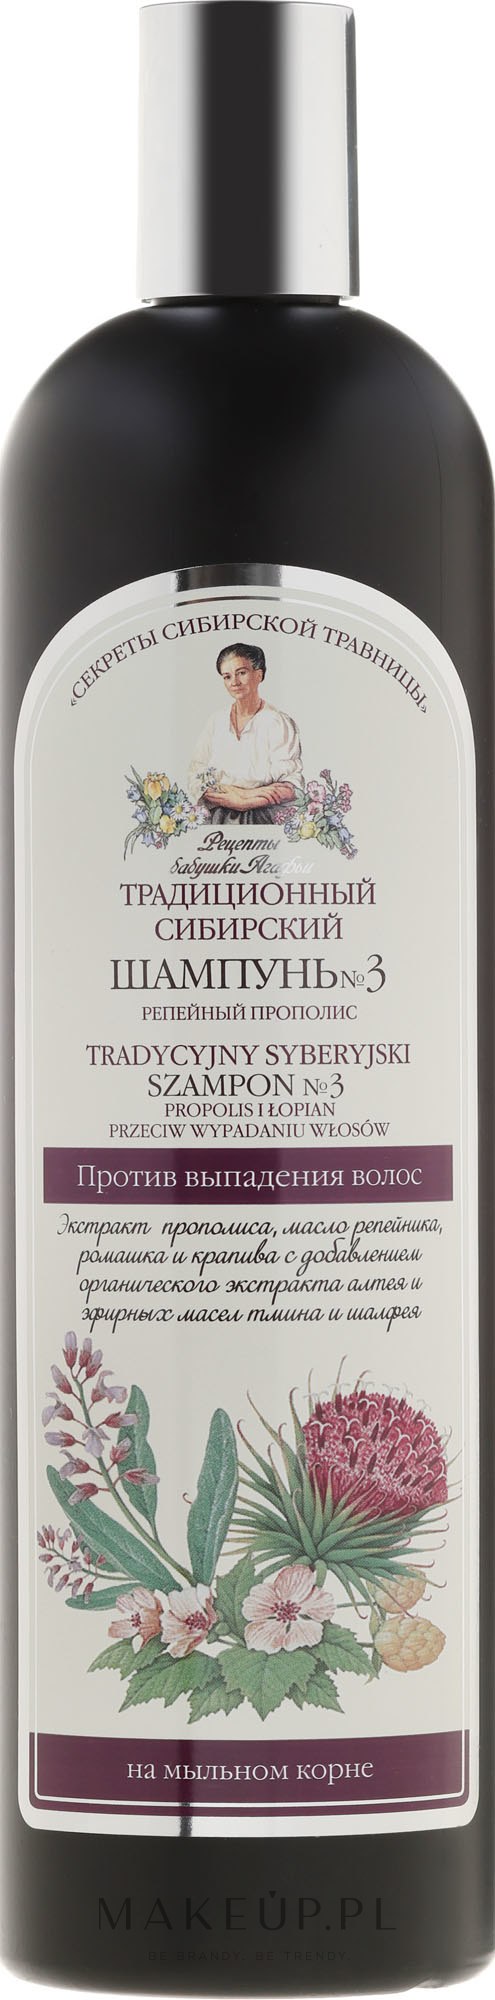 syberyjski szampon 3 propolis wypadanie agafii